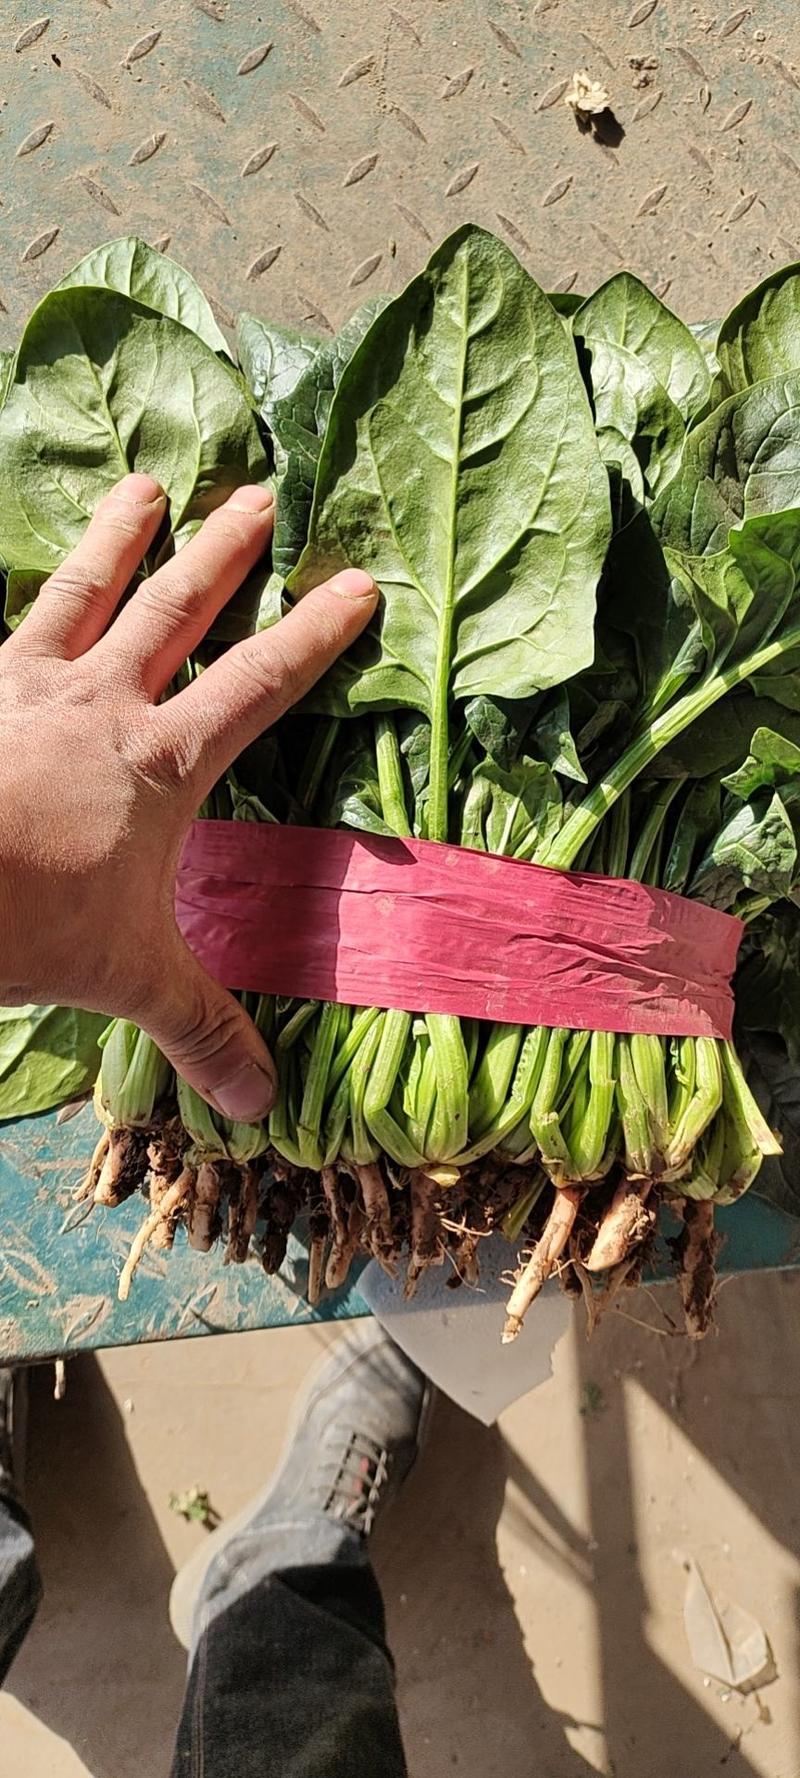 【菠菜】河北大叶菠菜常年供应产地一手货源品质保证